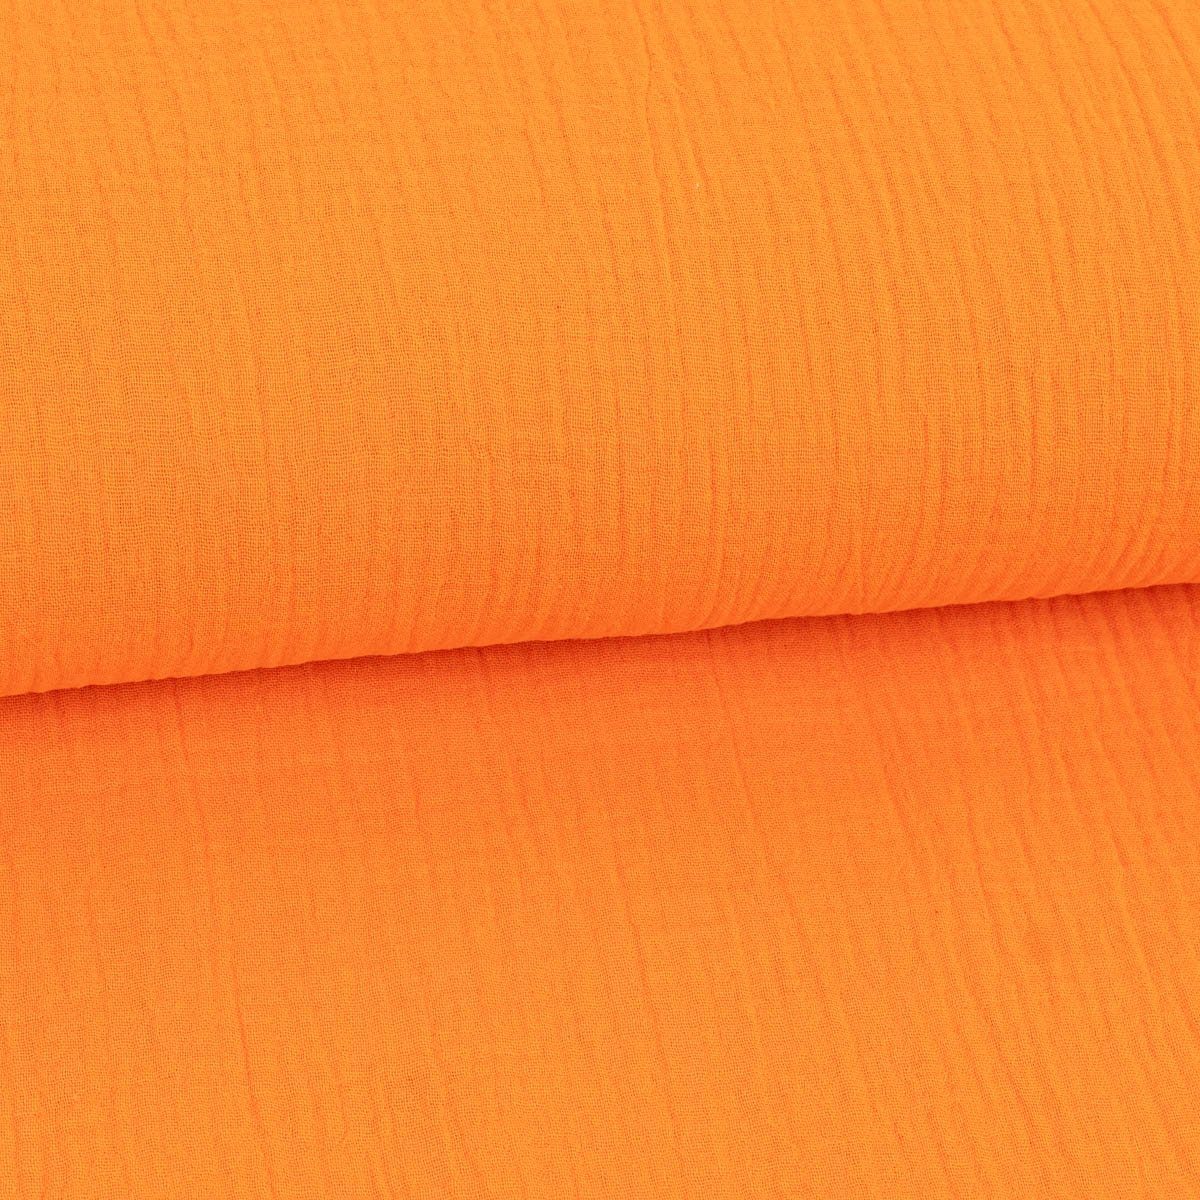 SCHÖNER LEBEN. Stoff Musselin Stoff Double Gauze NEON einfarbig orange 1,35m Breite, allergikergeeignet